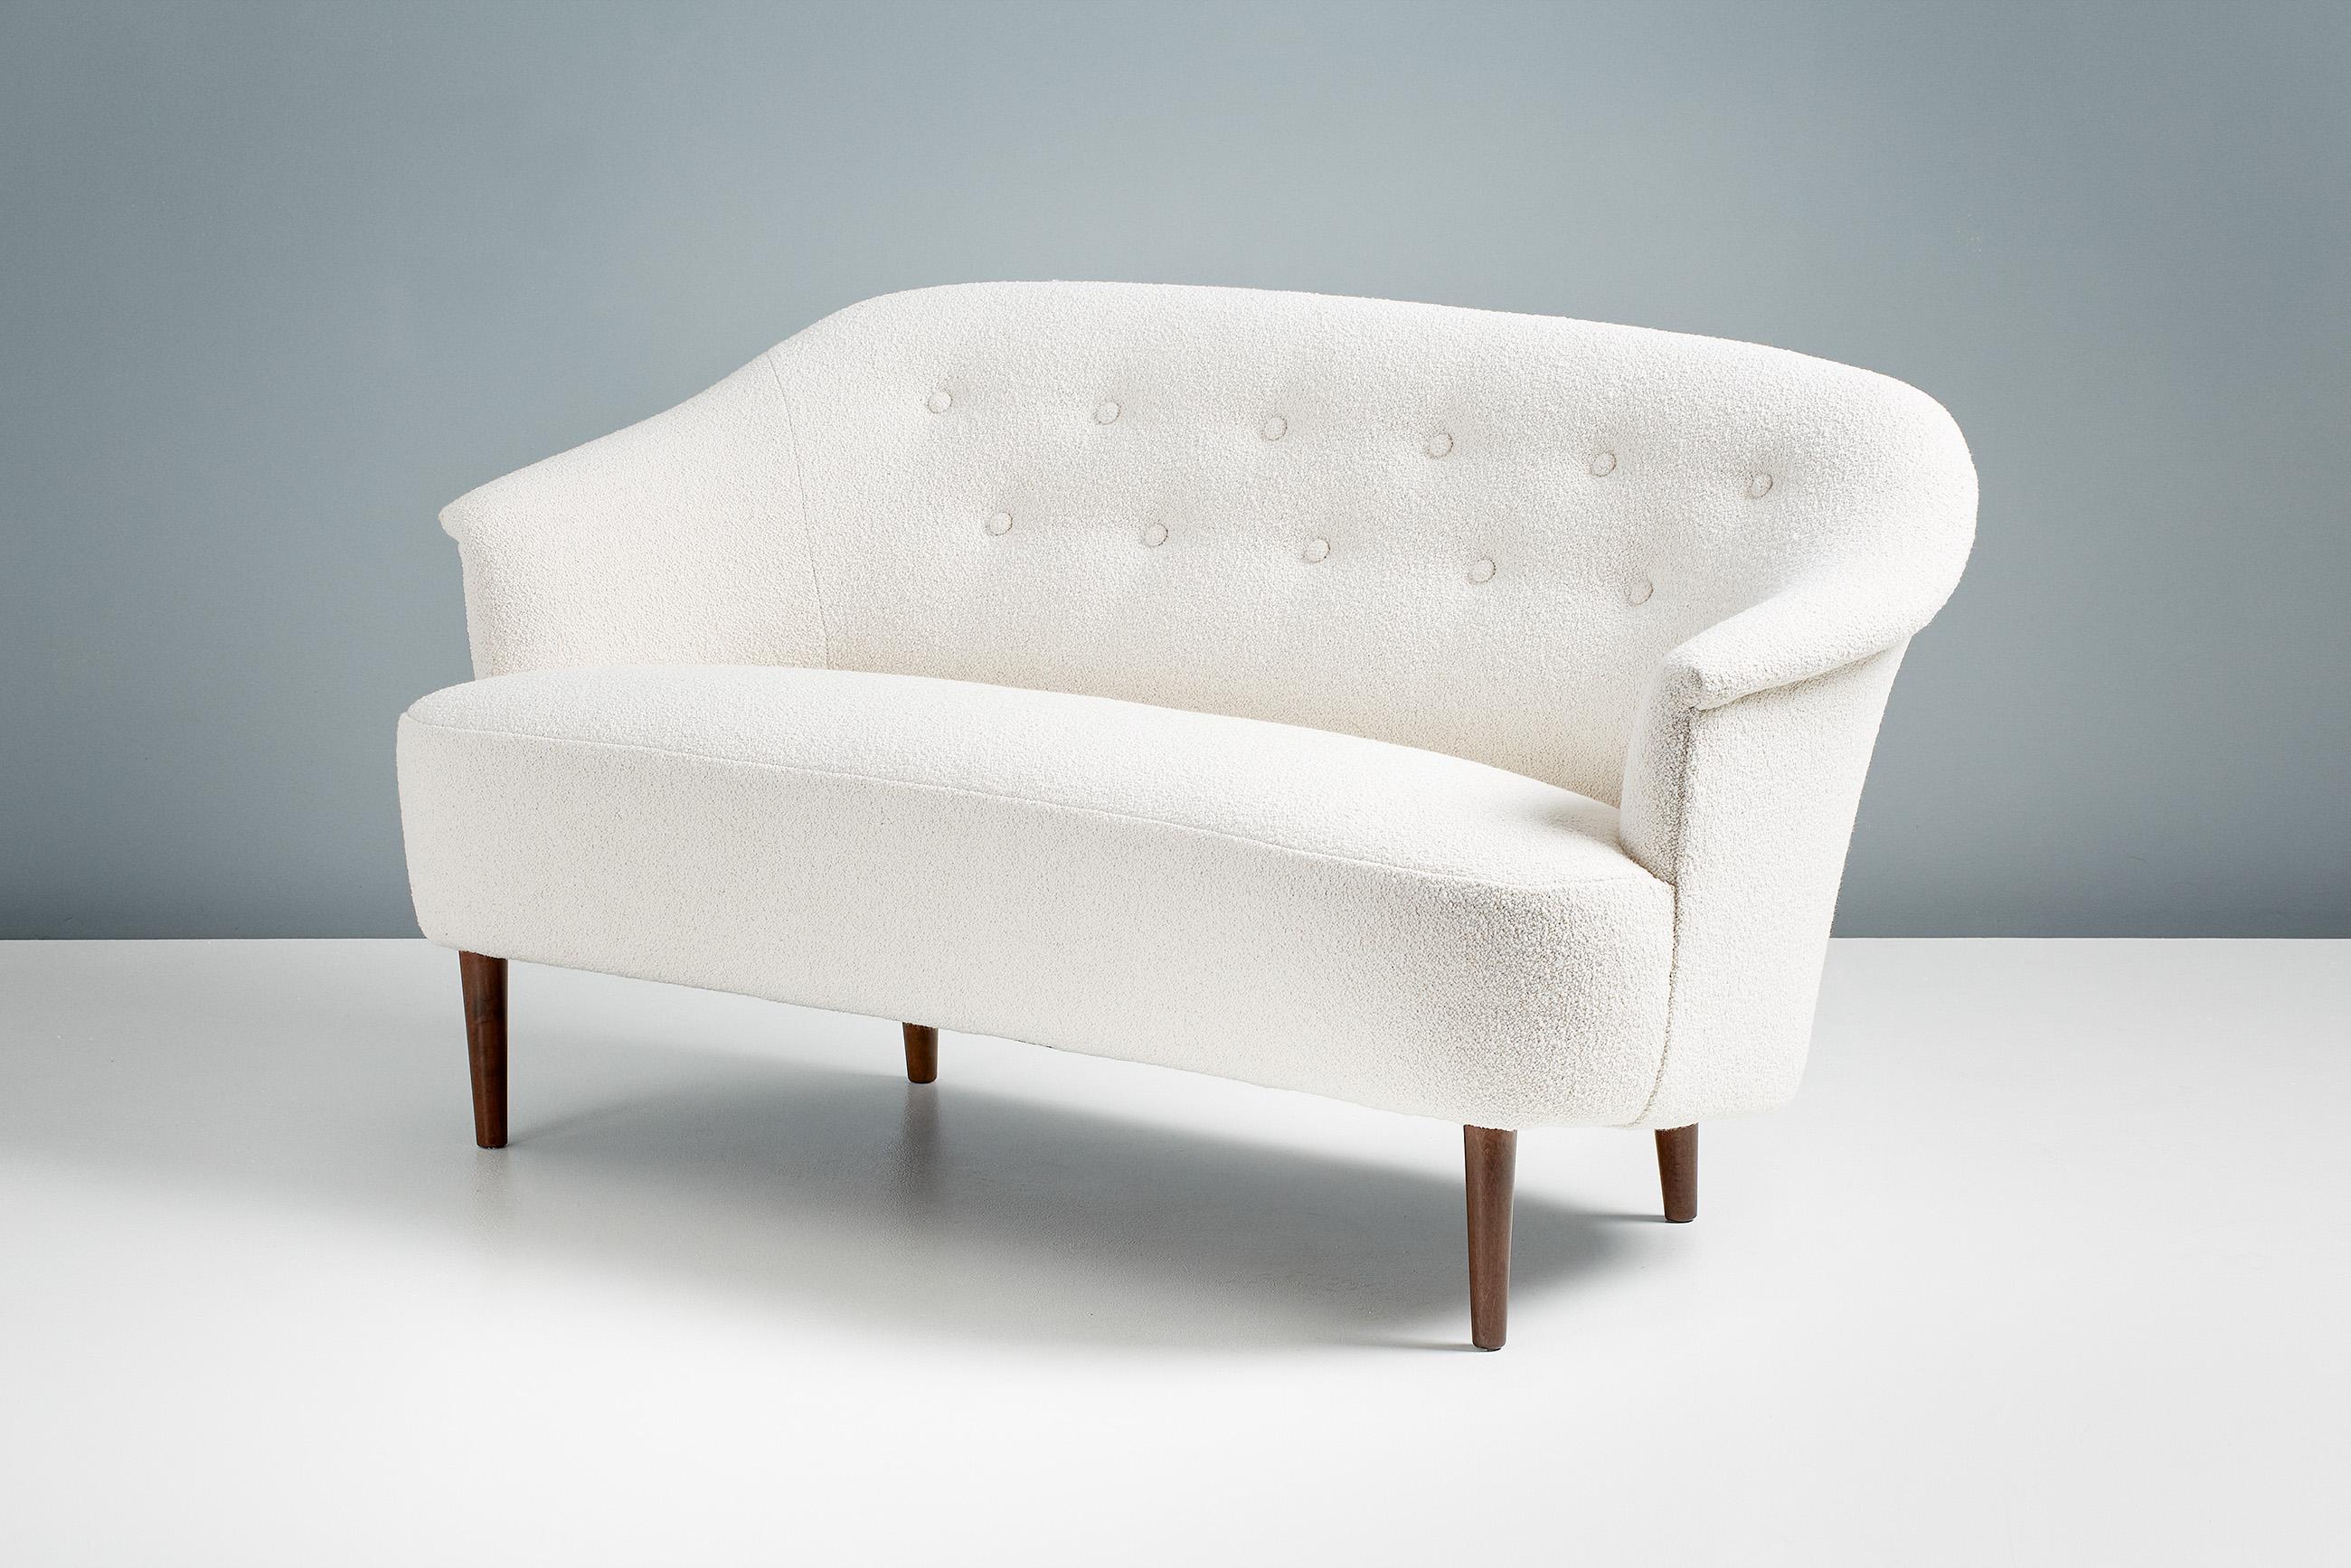 Carl Malmsten

Carl Malmsten Kleines Sofa, ca. 1940er Jahre

Dieses außergewöhnliche schwedische Möbelstück wurde in den 1940er Jahren vom Tischlermeister und Designer Carl Malmsten entworfen. Es wurde in seiner eigenen Werkstatt in der Nähe von